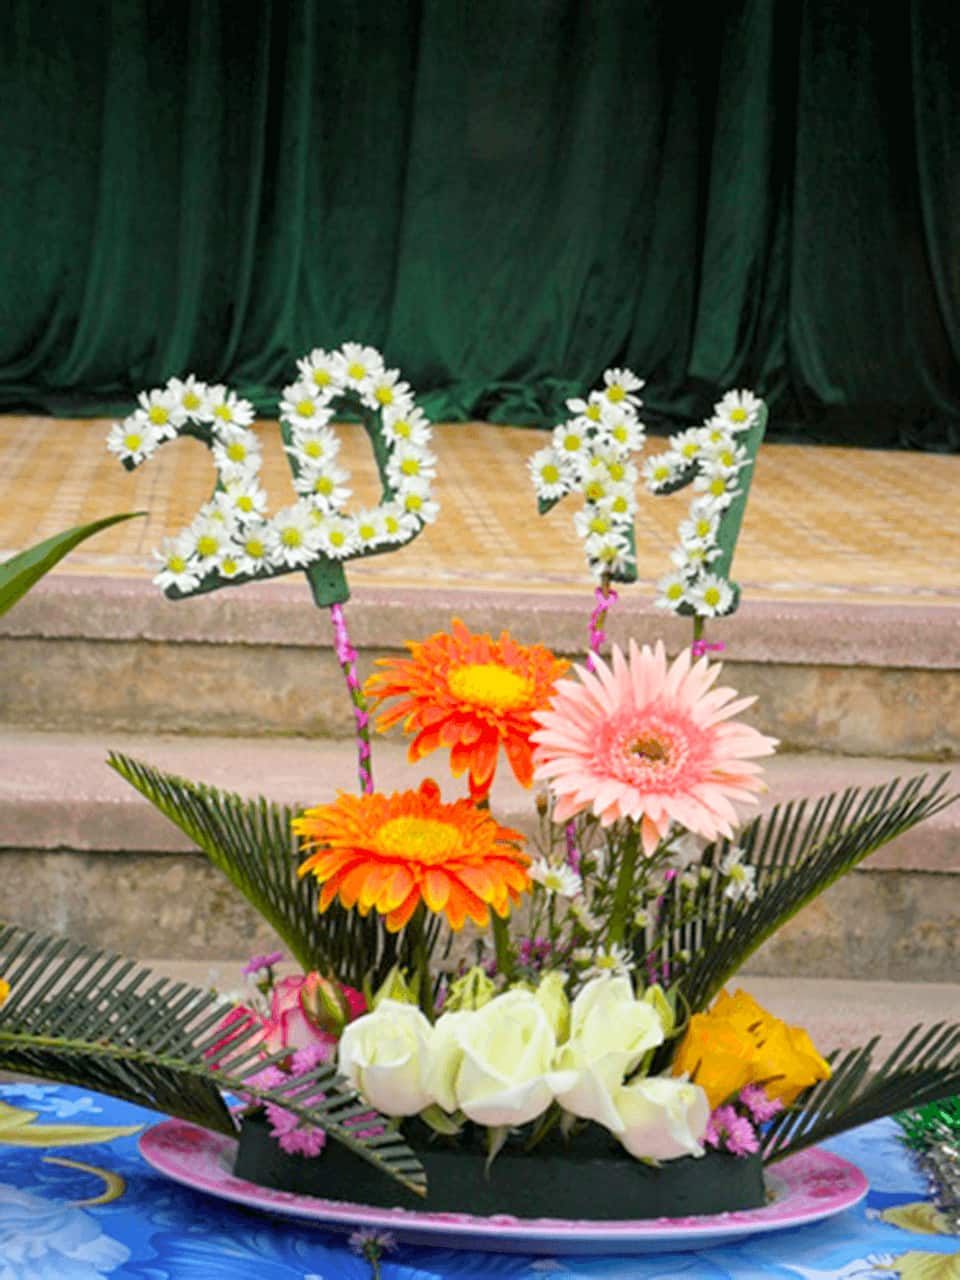 Phiếu chấm cắm hoa với tiêu chí đa dạng sẽ giúp bạn có cái nhìn rõ hơn về chất lượng và sáng tạo của các tác phẩm cắm hoa trong ngày Nhà giáo Việt Nam. Hãy cùng đánh giá và tìm hiểu về sự đa dạng trong sáng tạo cắm hoa của các học sinh.